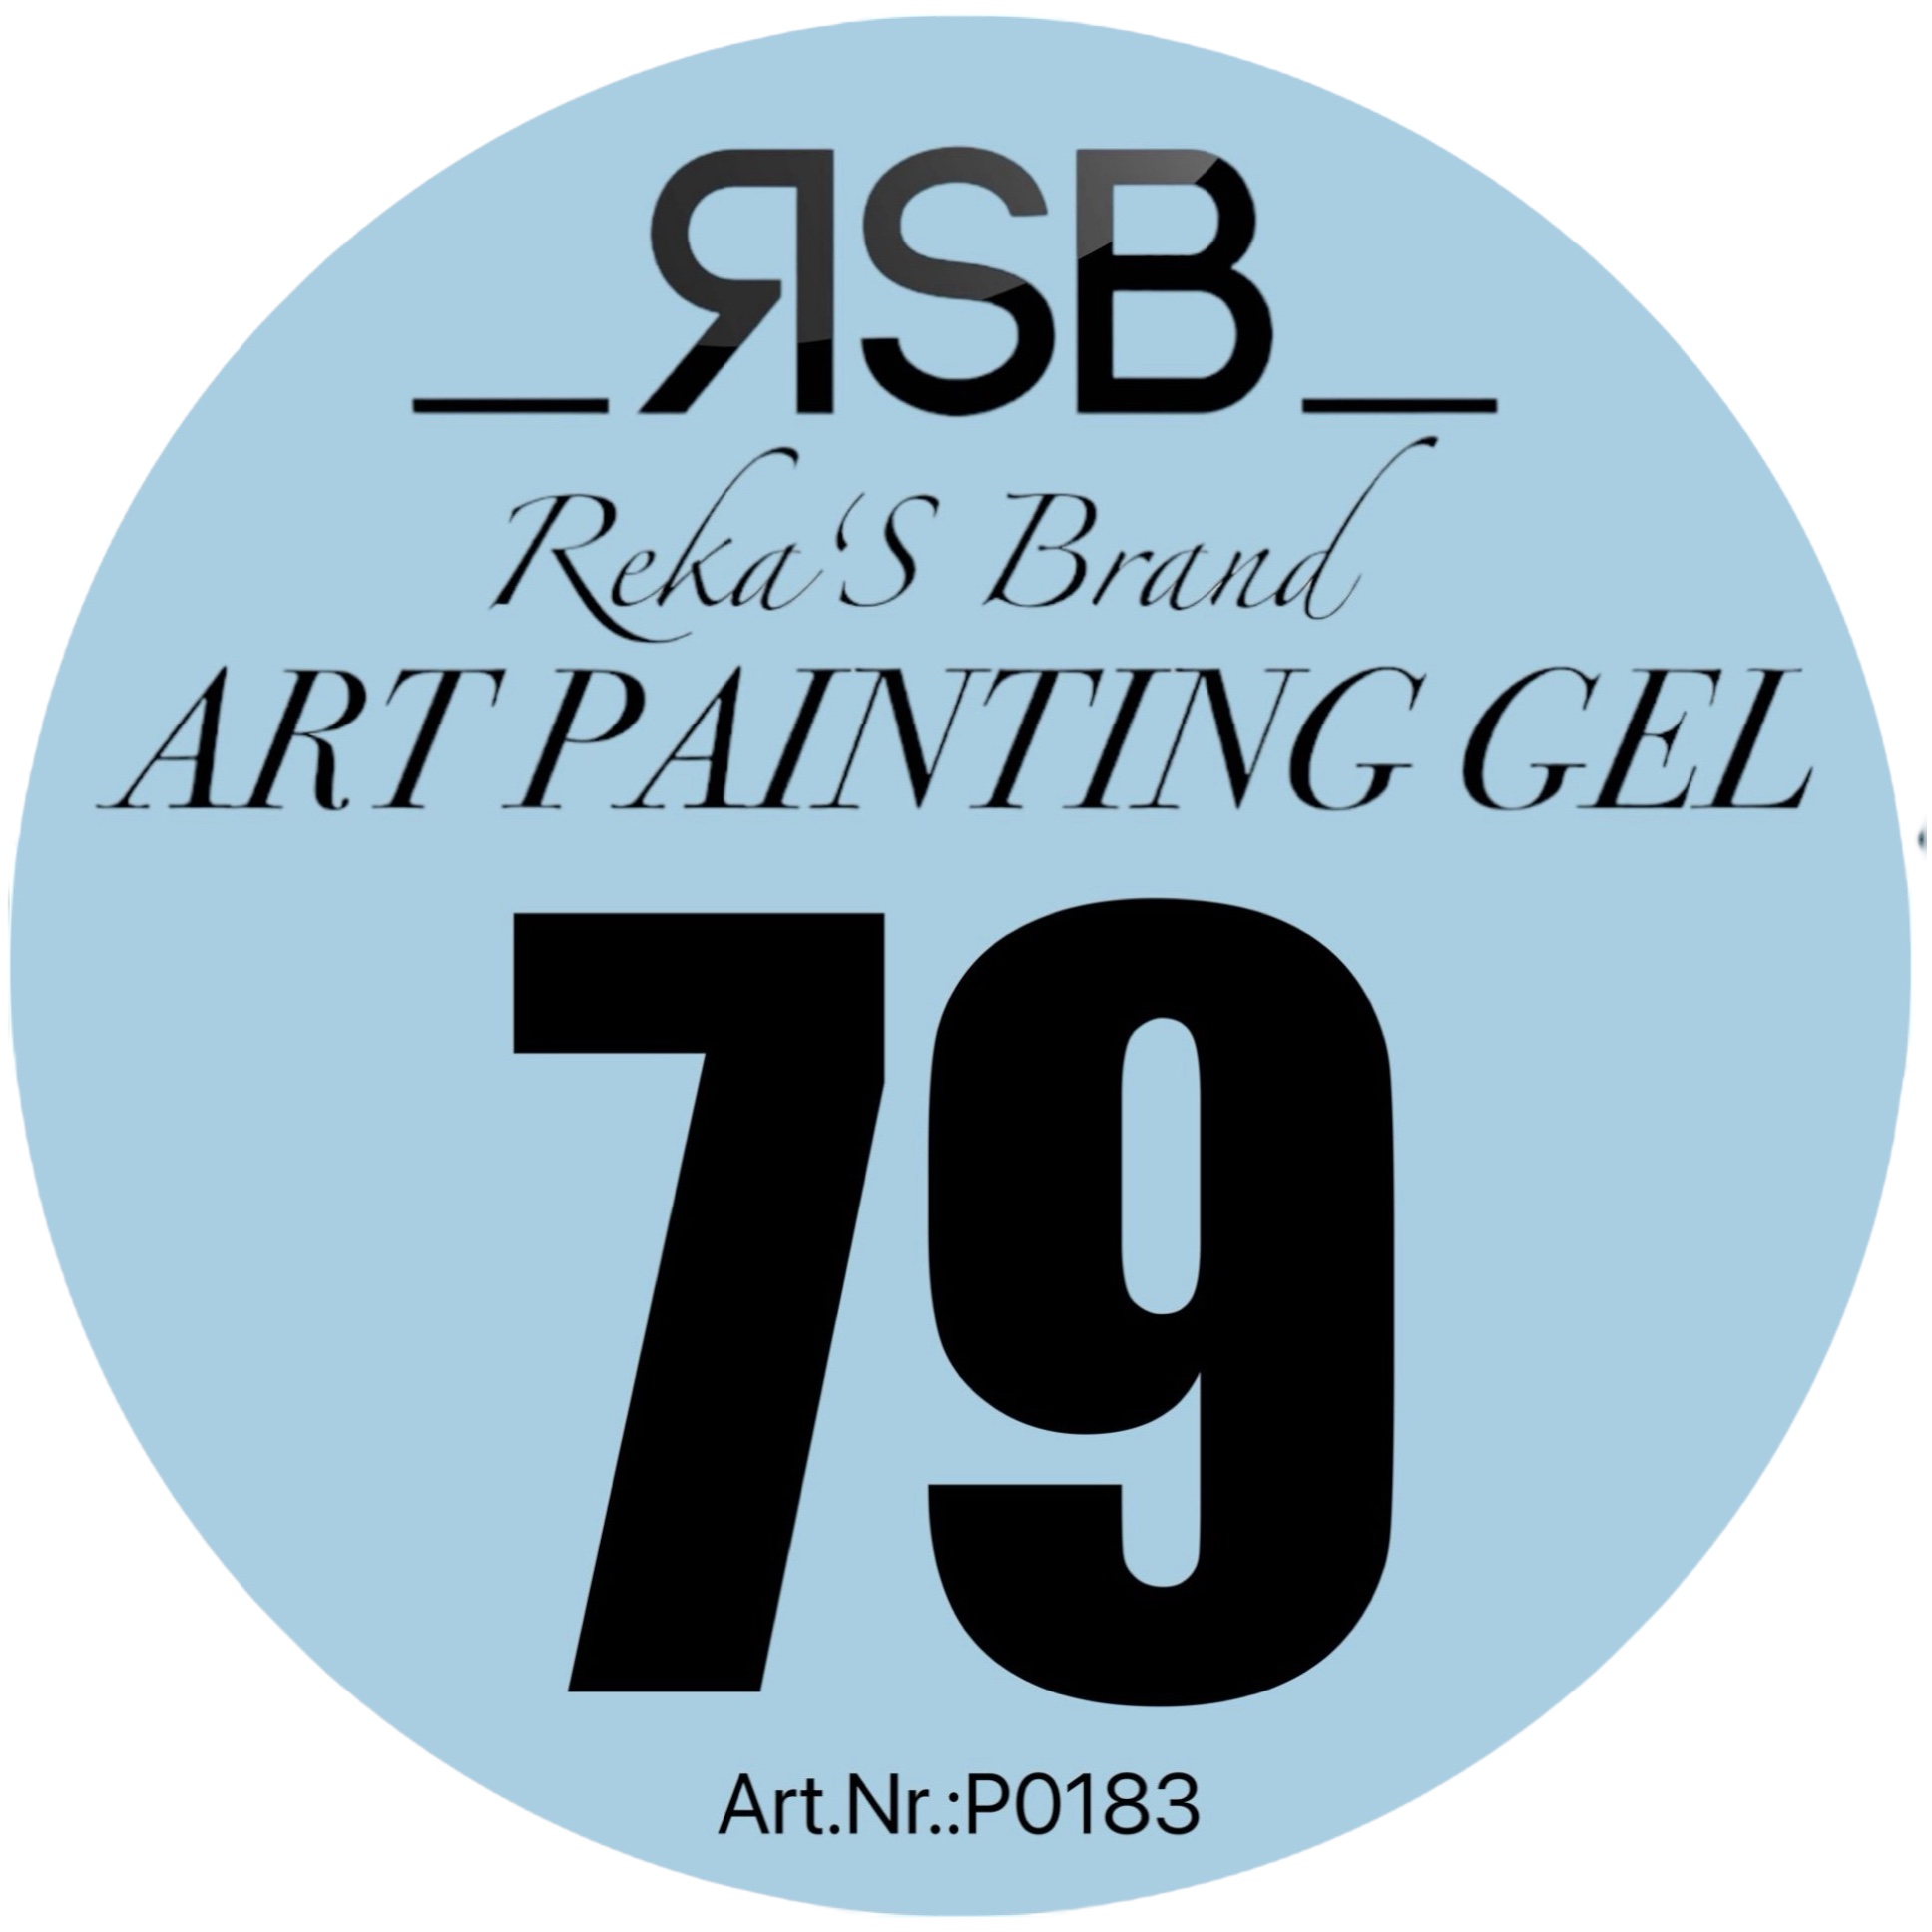 ART PAINTING GEL 79